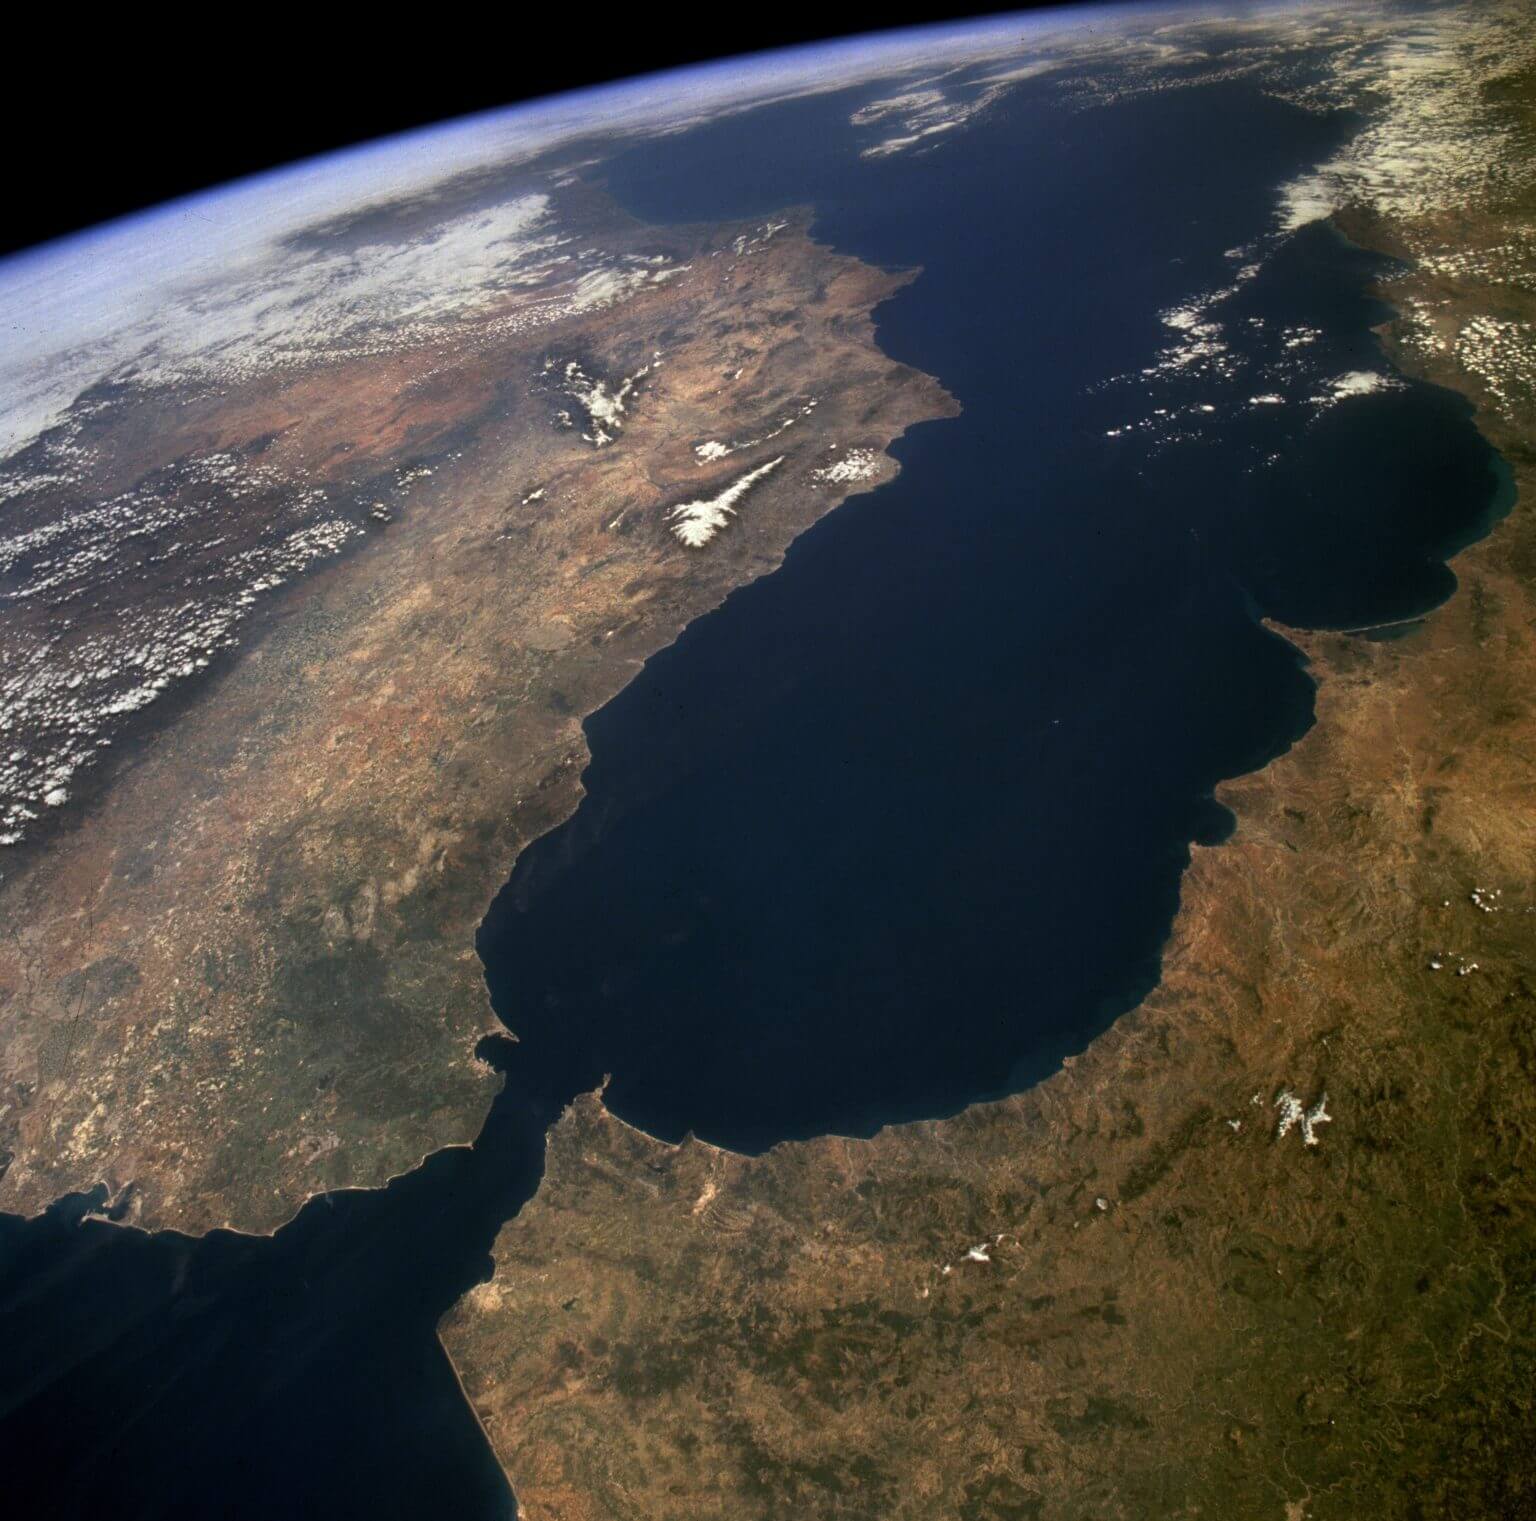 מיצר גיברלטר מהווה מחסום פיזי טבעי בין ספרד (צפון) ומרוקו (דרום). במונחים גיאולוגיים, מדובר על 16 קילומטר המפרידים בין שתי המדינות, כמו גם בין אירופה ואפריקה, והוא ממוקם במקום שבו שני הלוחות הטקטוניים העיקריים - הלוח האירו-אסייתי והלוח האפריקני - מתנגשים. קרדיט: נאס"א